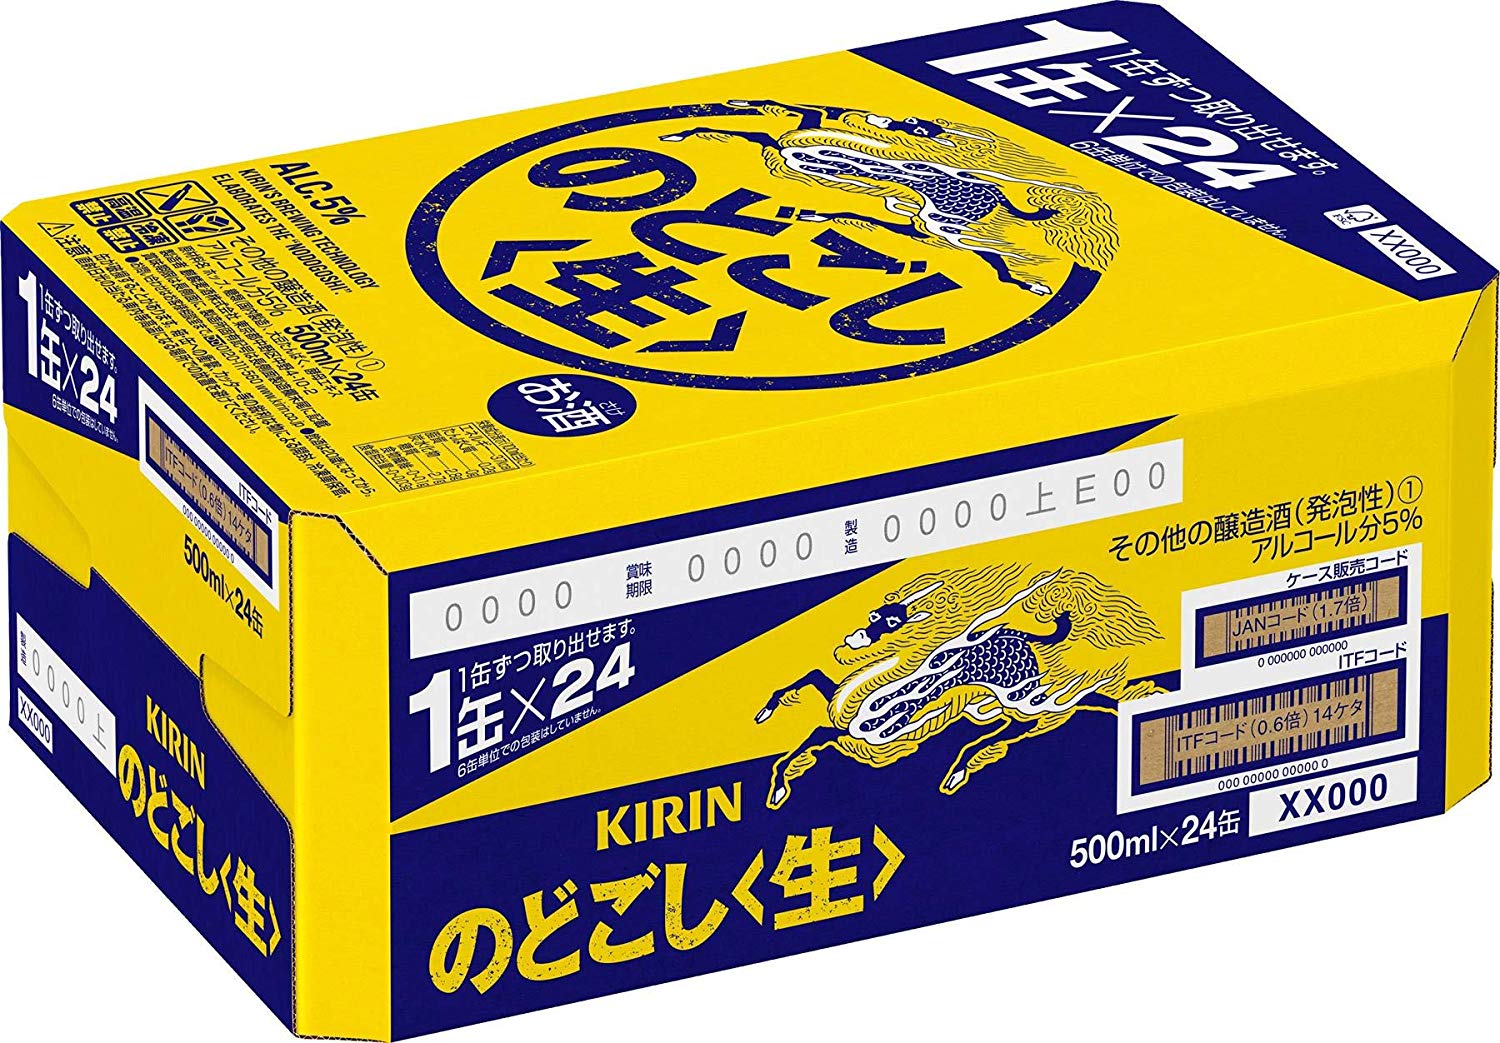 キリン のどごし (生) 缶 500ml ×24缶